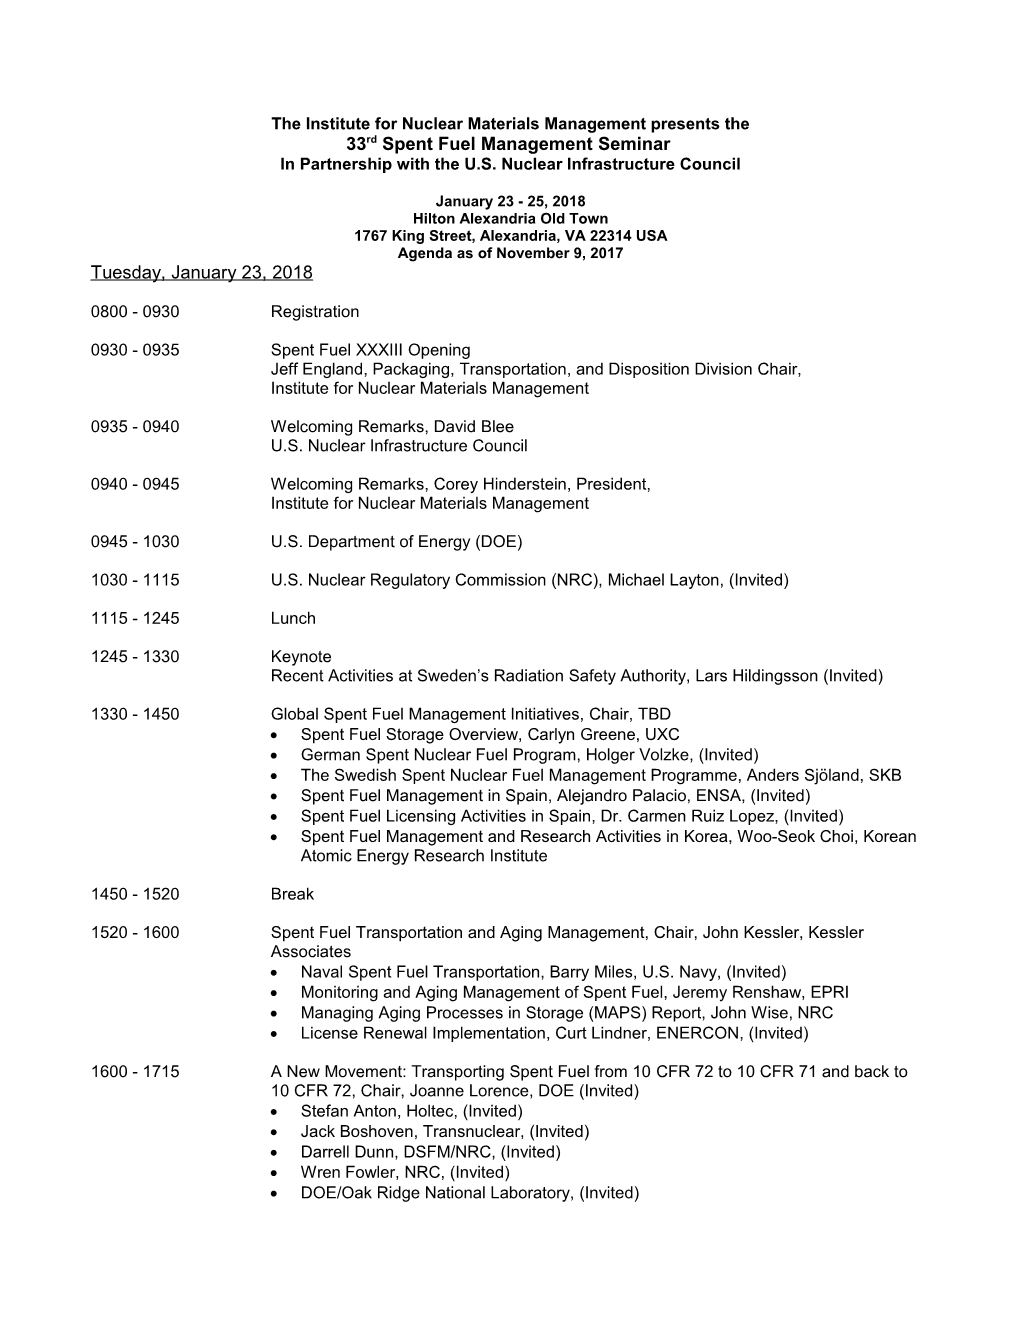 Proposed Seminar Agenda/Topics/Schedule - Rev C